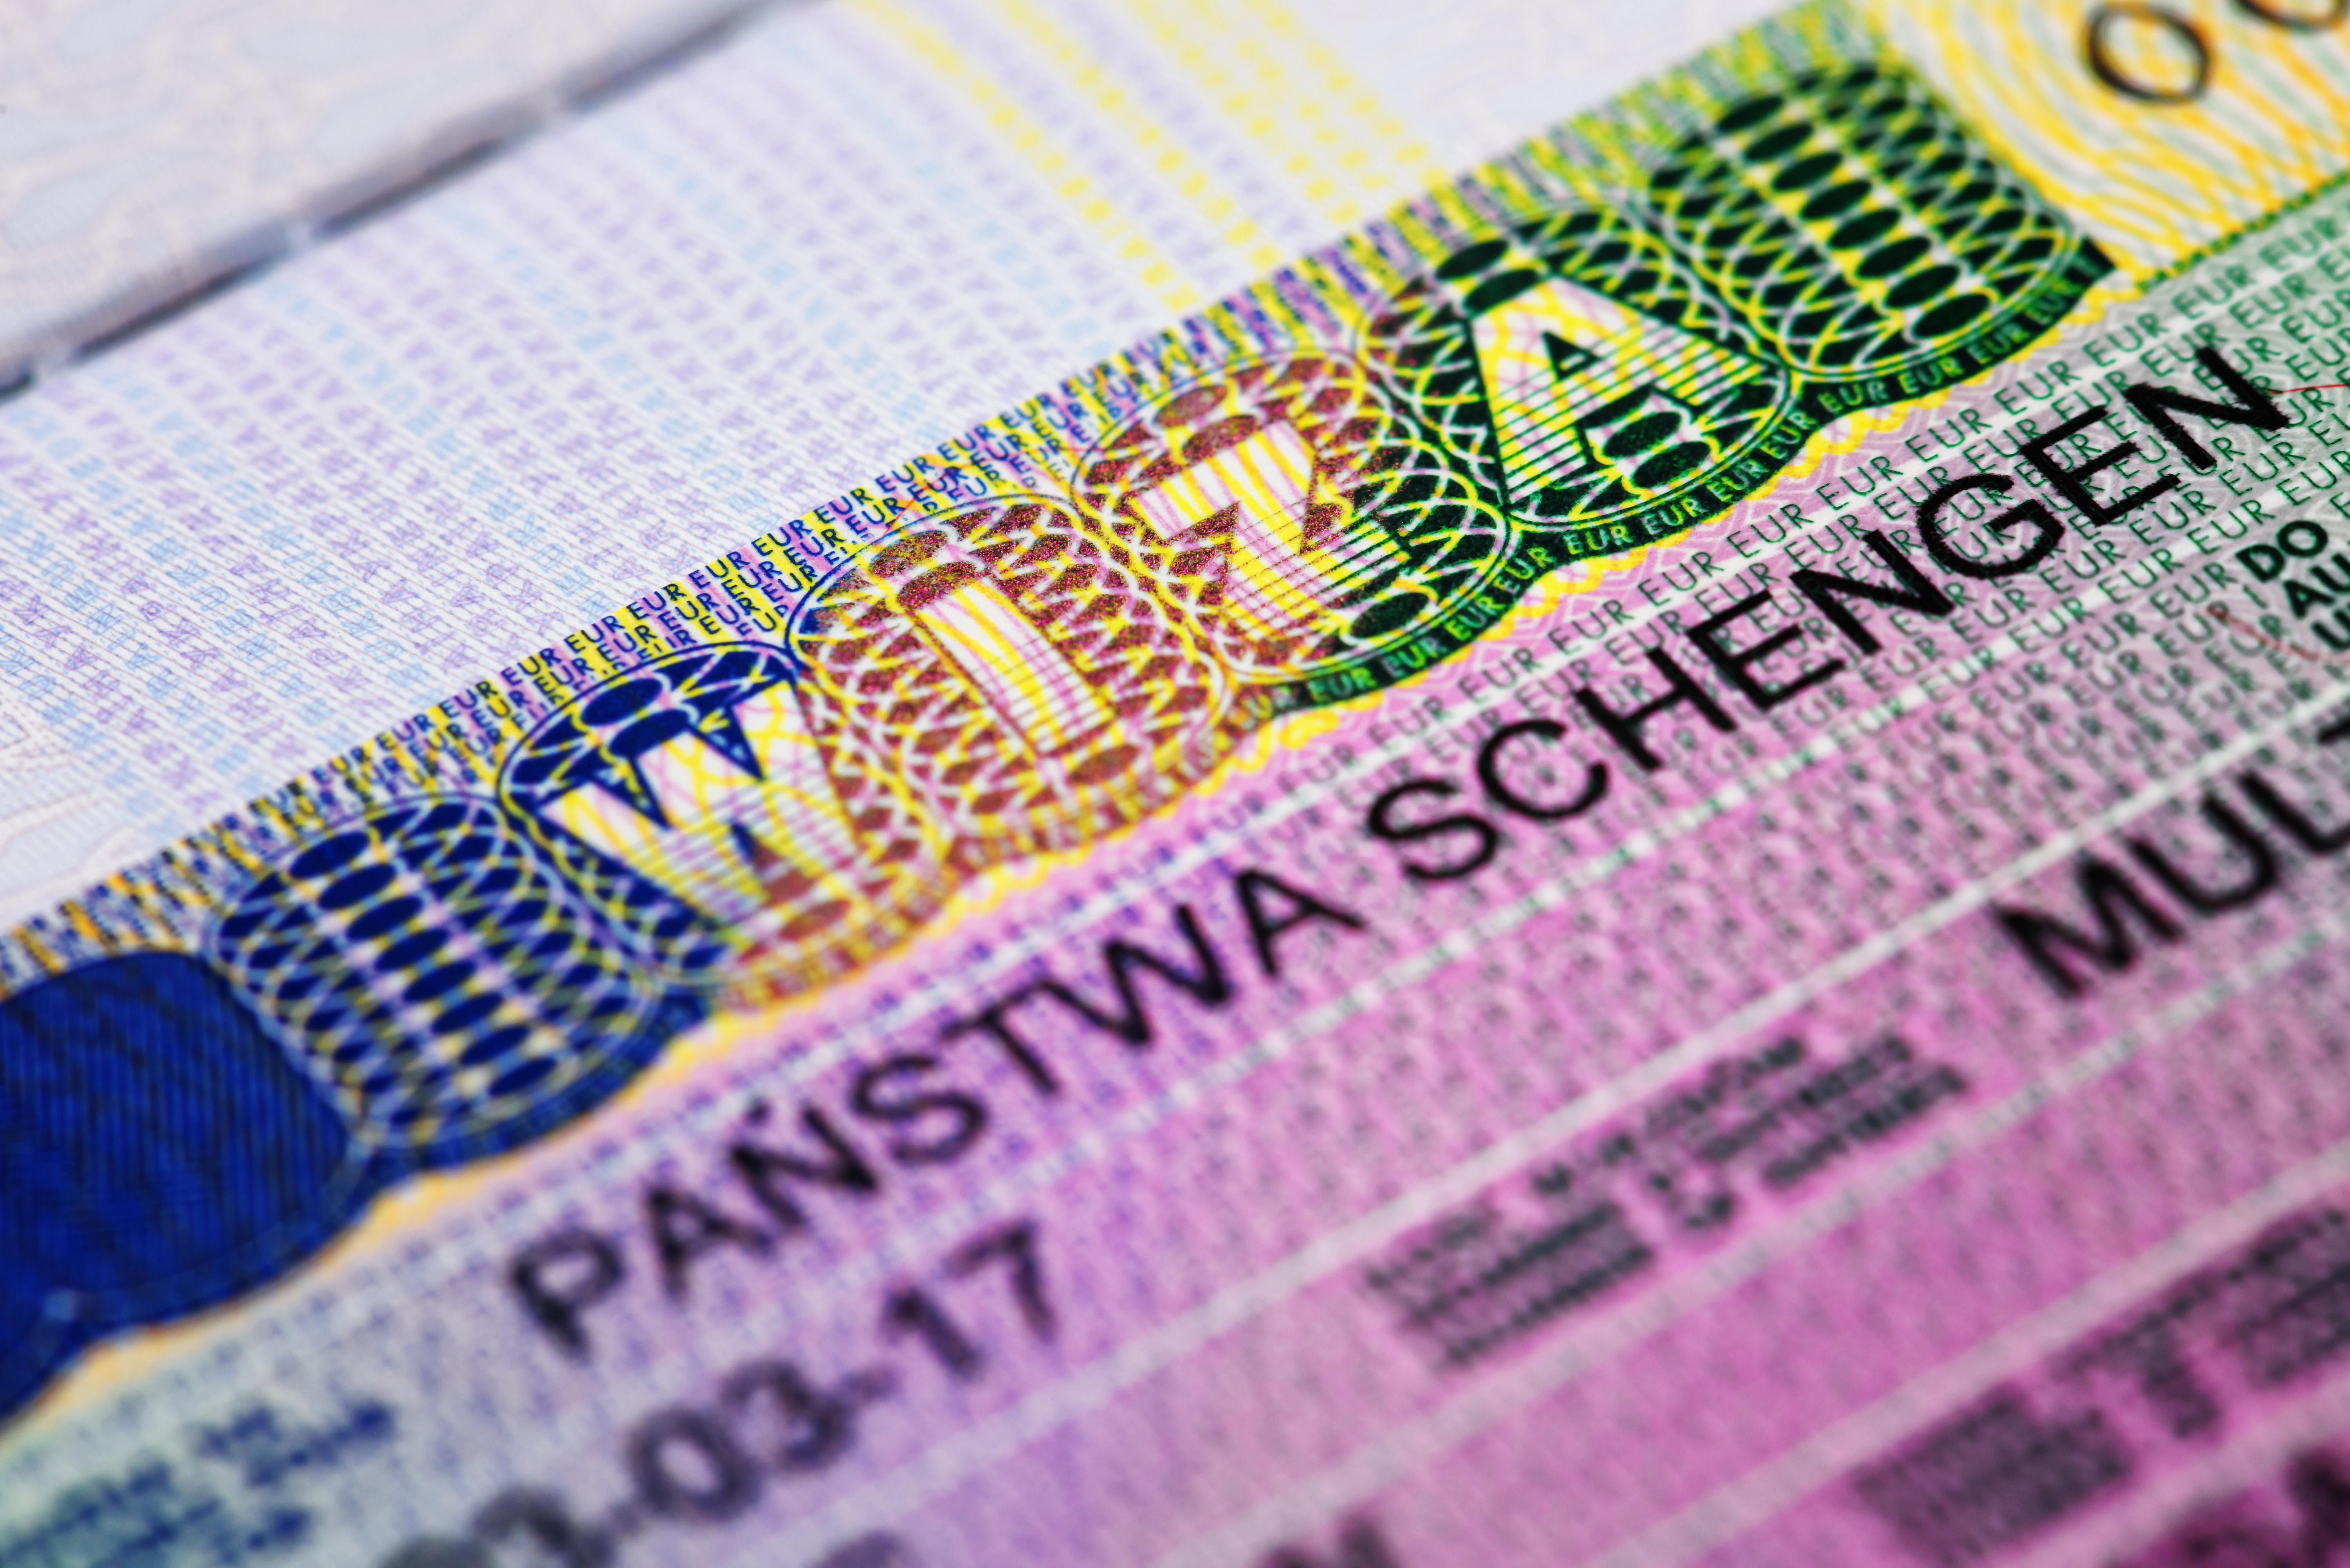 Виза в Польшу, которую иностранцам надо оформлять для работы в стране